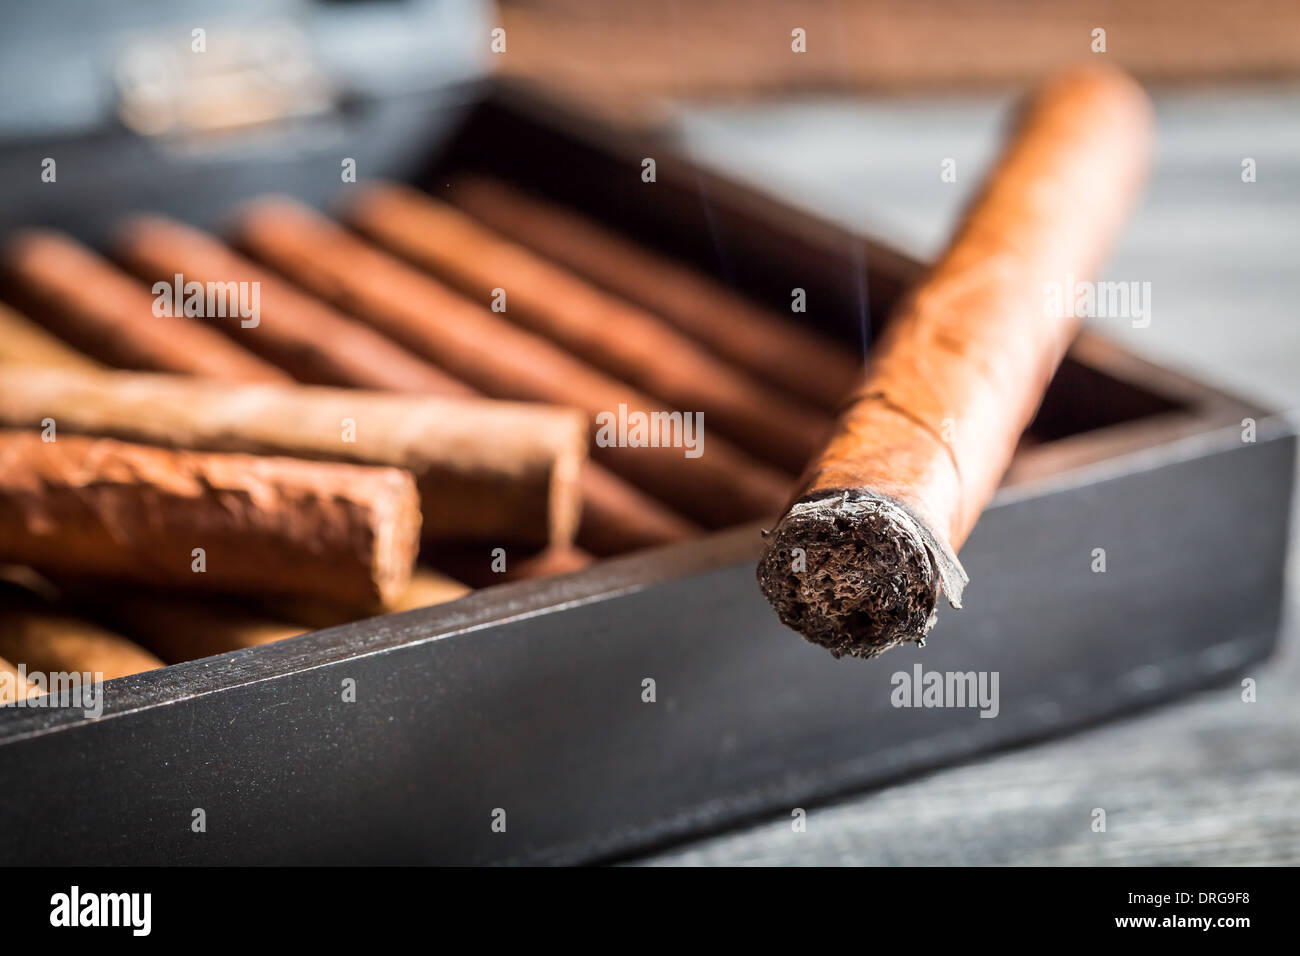 Closeup of burning cigar with smoke Stock Photo